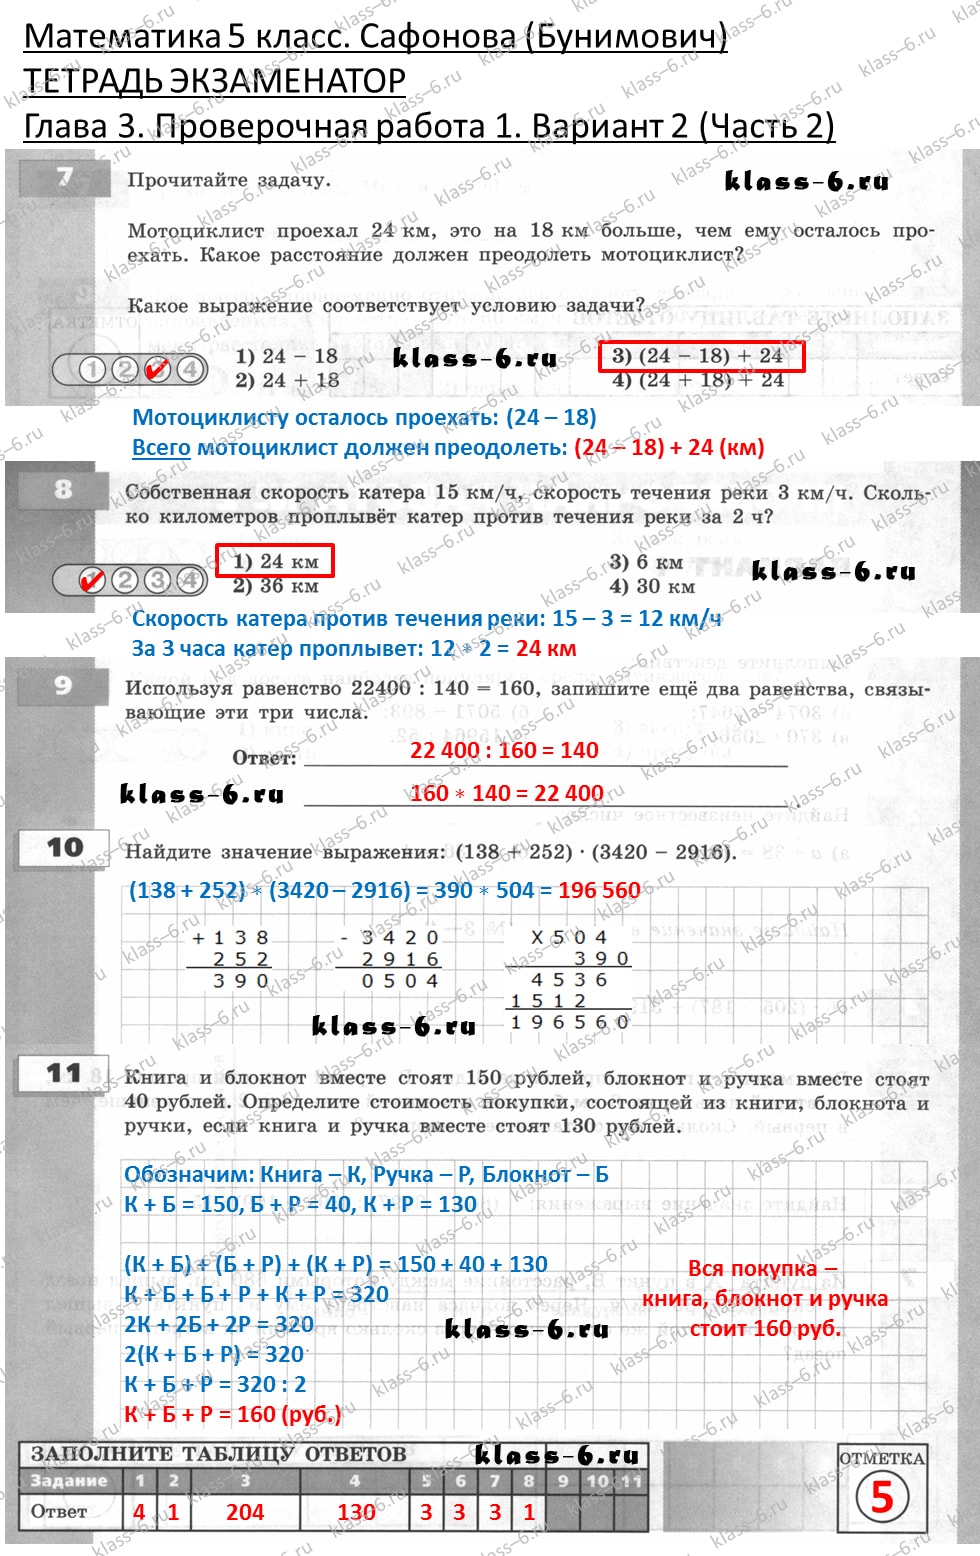 решебник и гдз по математике тетрадь экзаменатор Сафонова, Бунимович 5 класс глава 3 контрольная работа 1 вариант 2 (2)